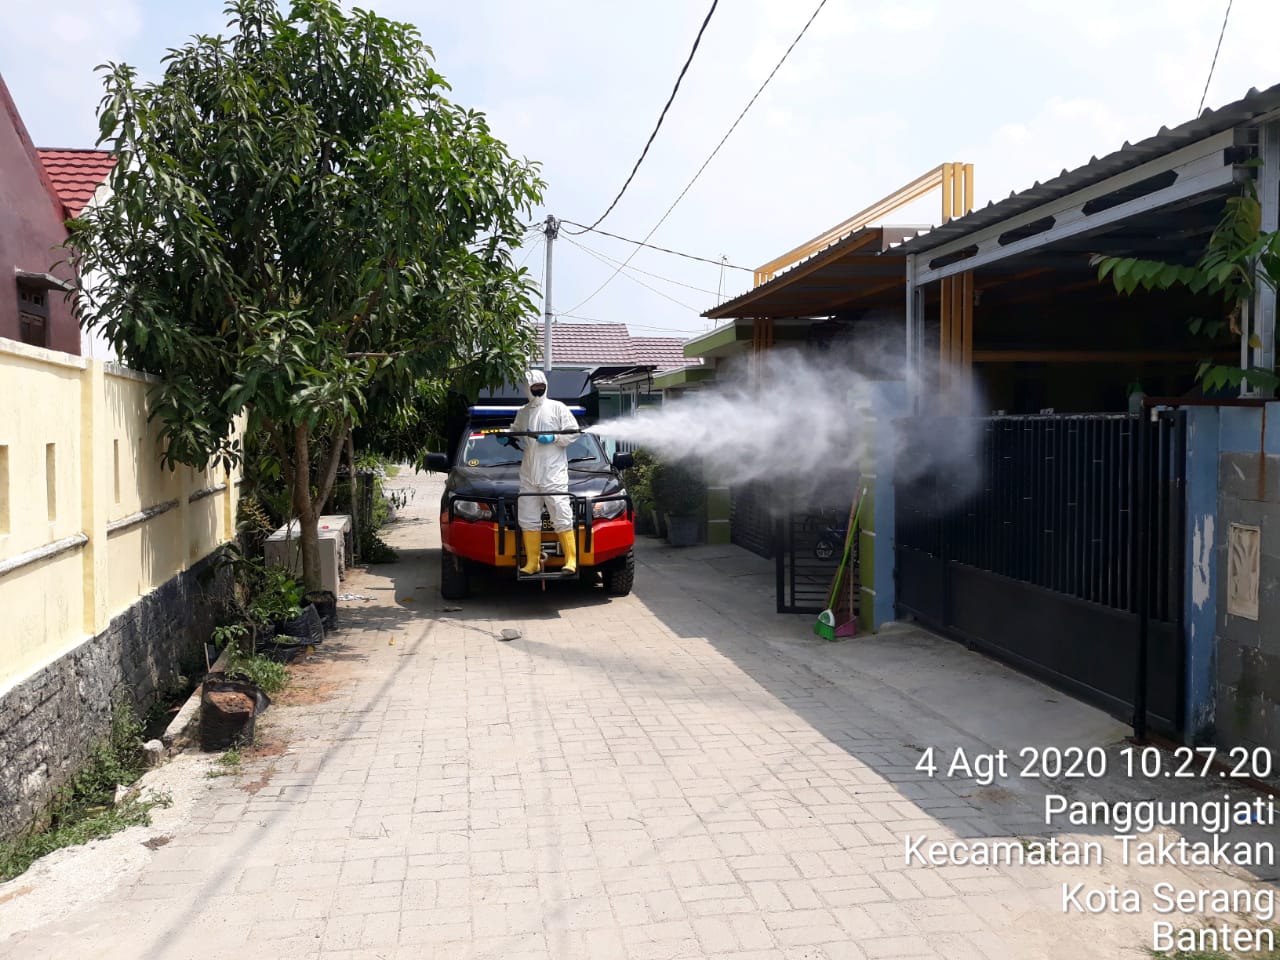 Sat Brimob Polda Banten Lakukan Penyemprotan Disinfektan di Perumahan Warga